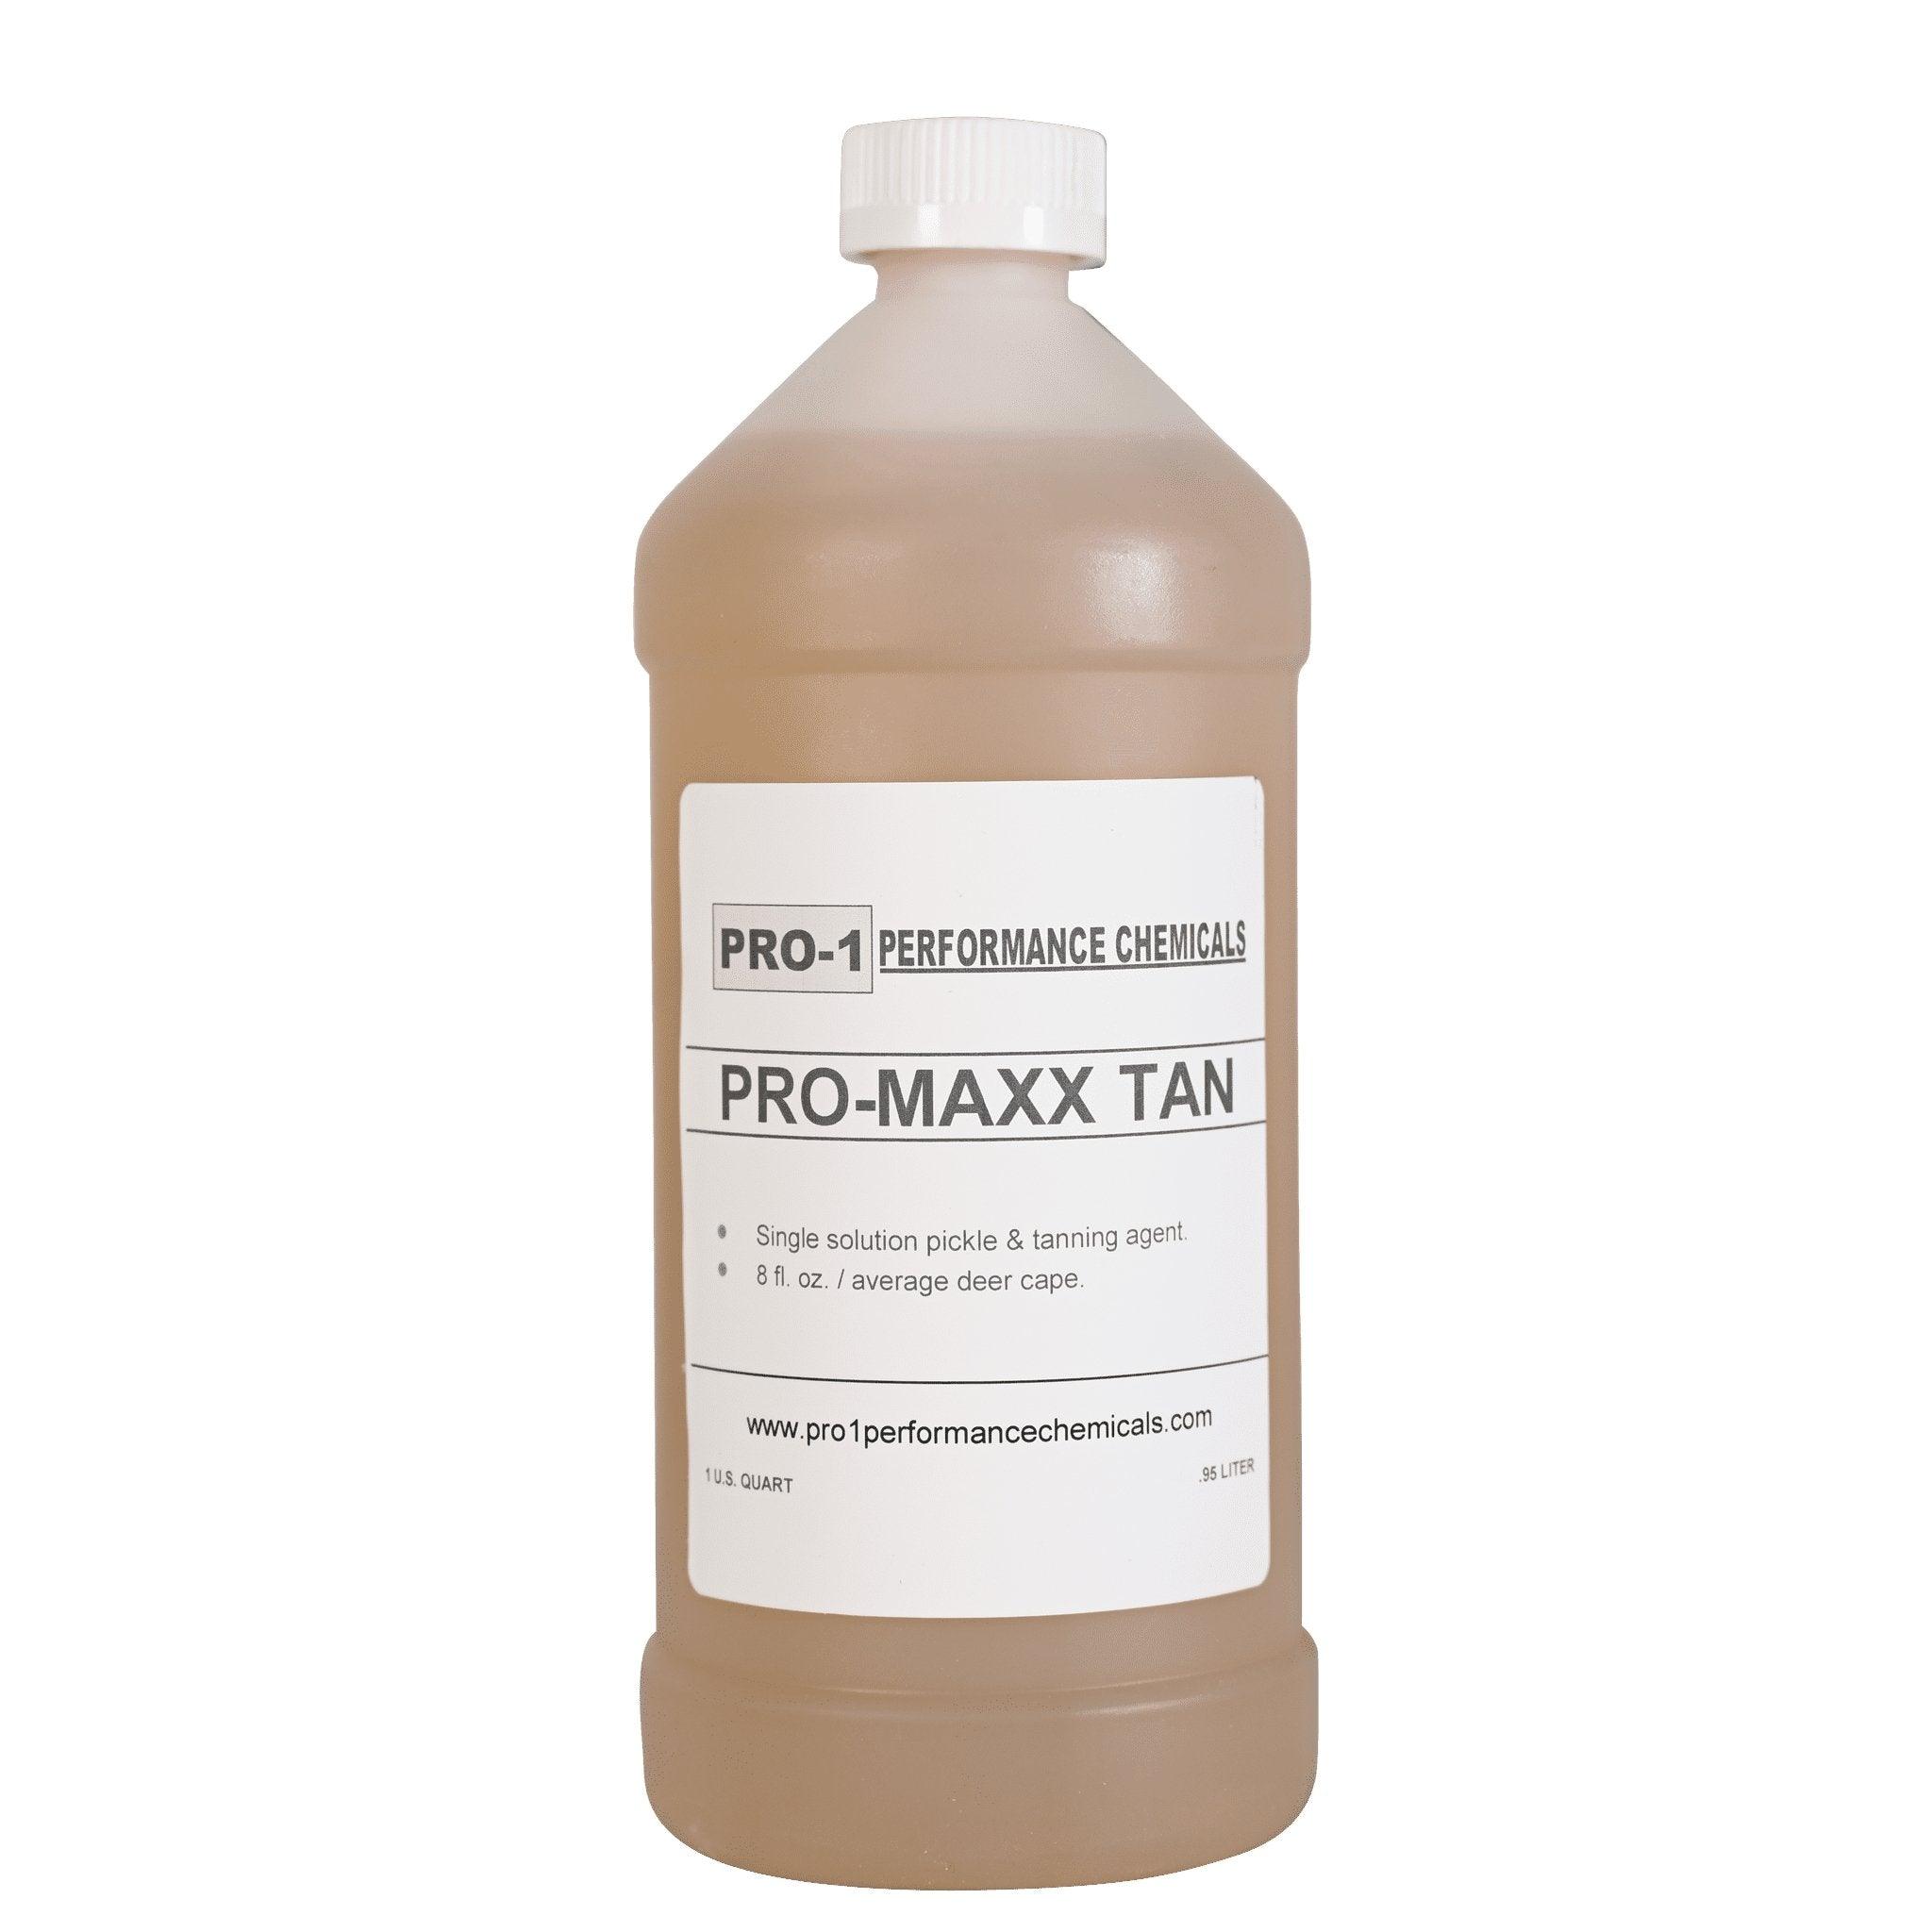 Pro-1 Pro-Maxx Tan - Matuska Taxidermy Supply Company